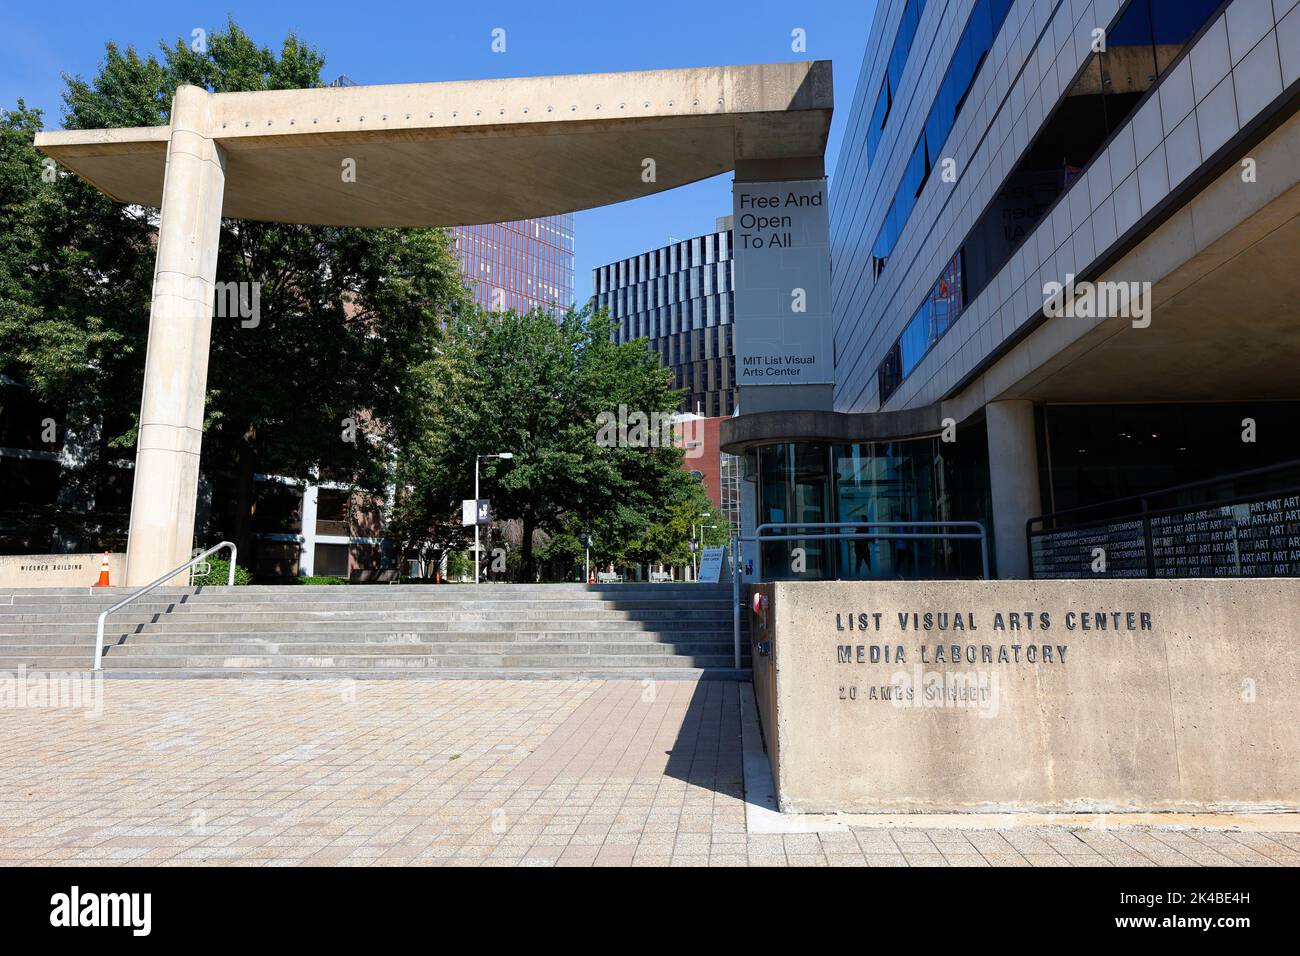 MIT List Visual Arts Center, 20 Ames St, Cambridge, Massachusetts. Außenansicht eines Museums für zeitgenössische Kunst. Stockfoto